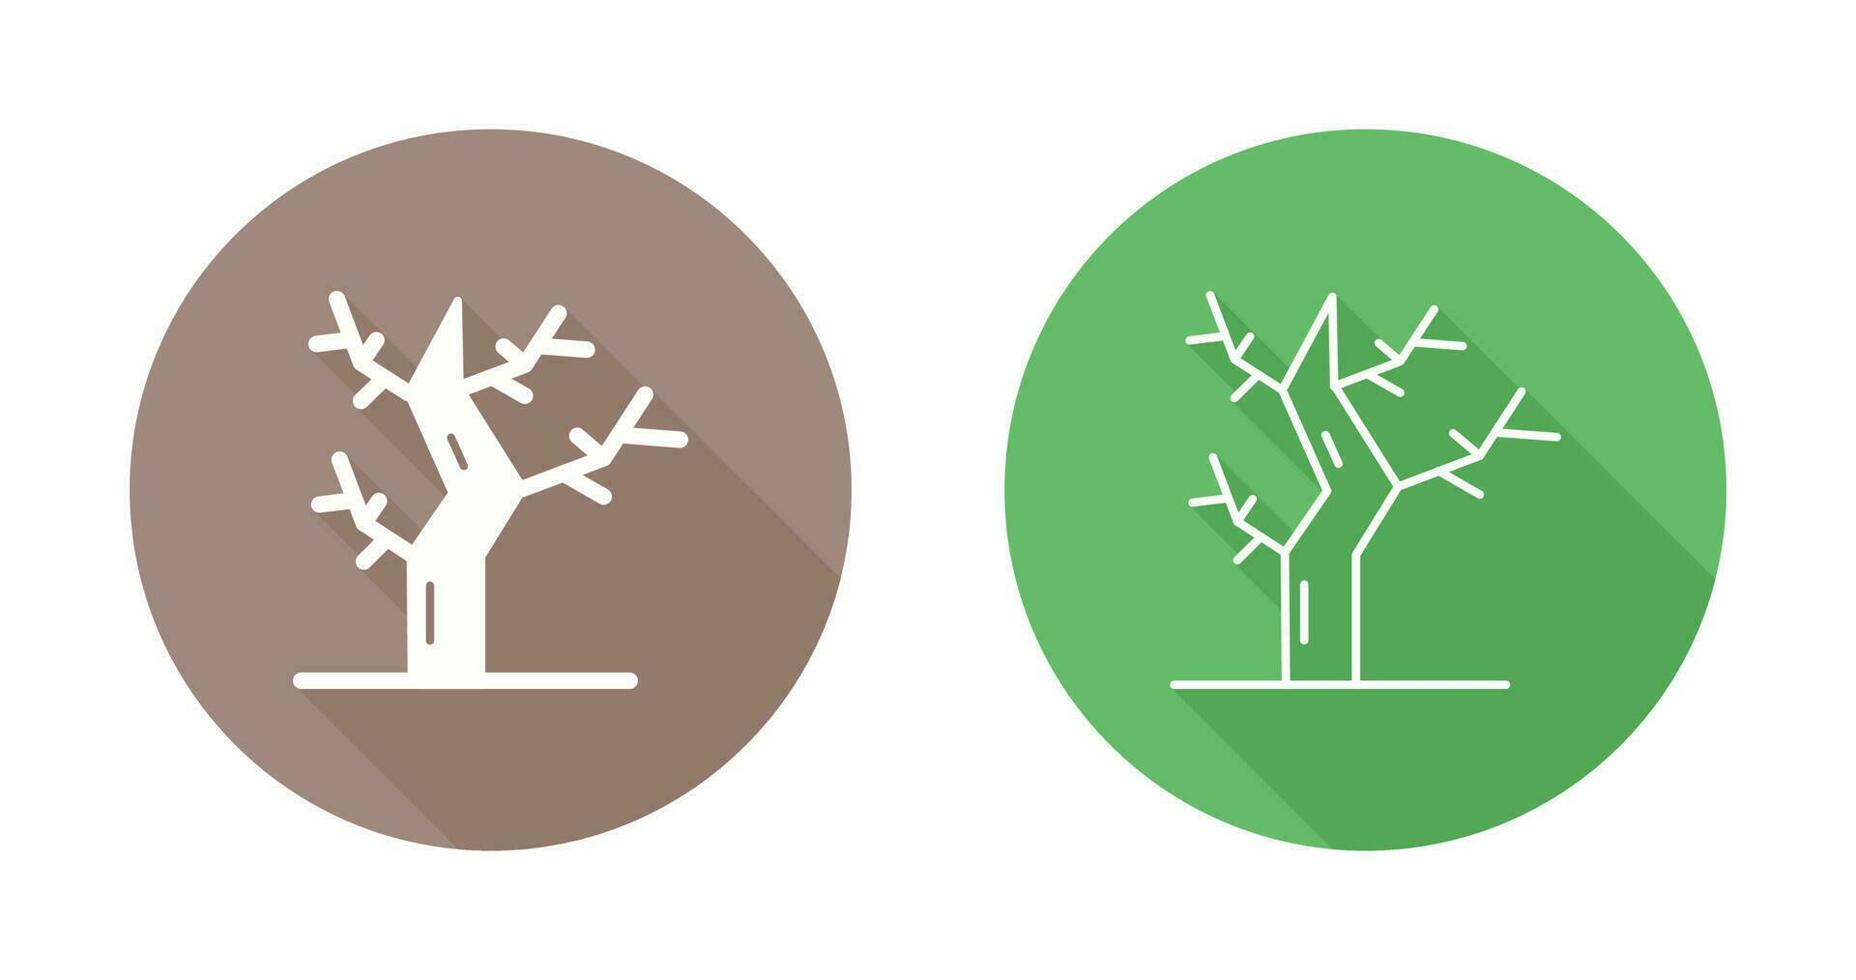 ícone de vetor de árvore seca